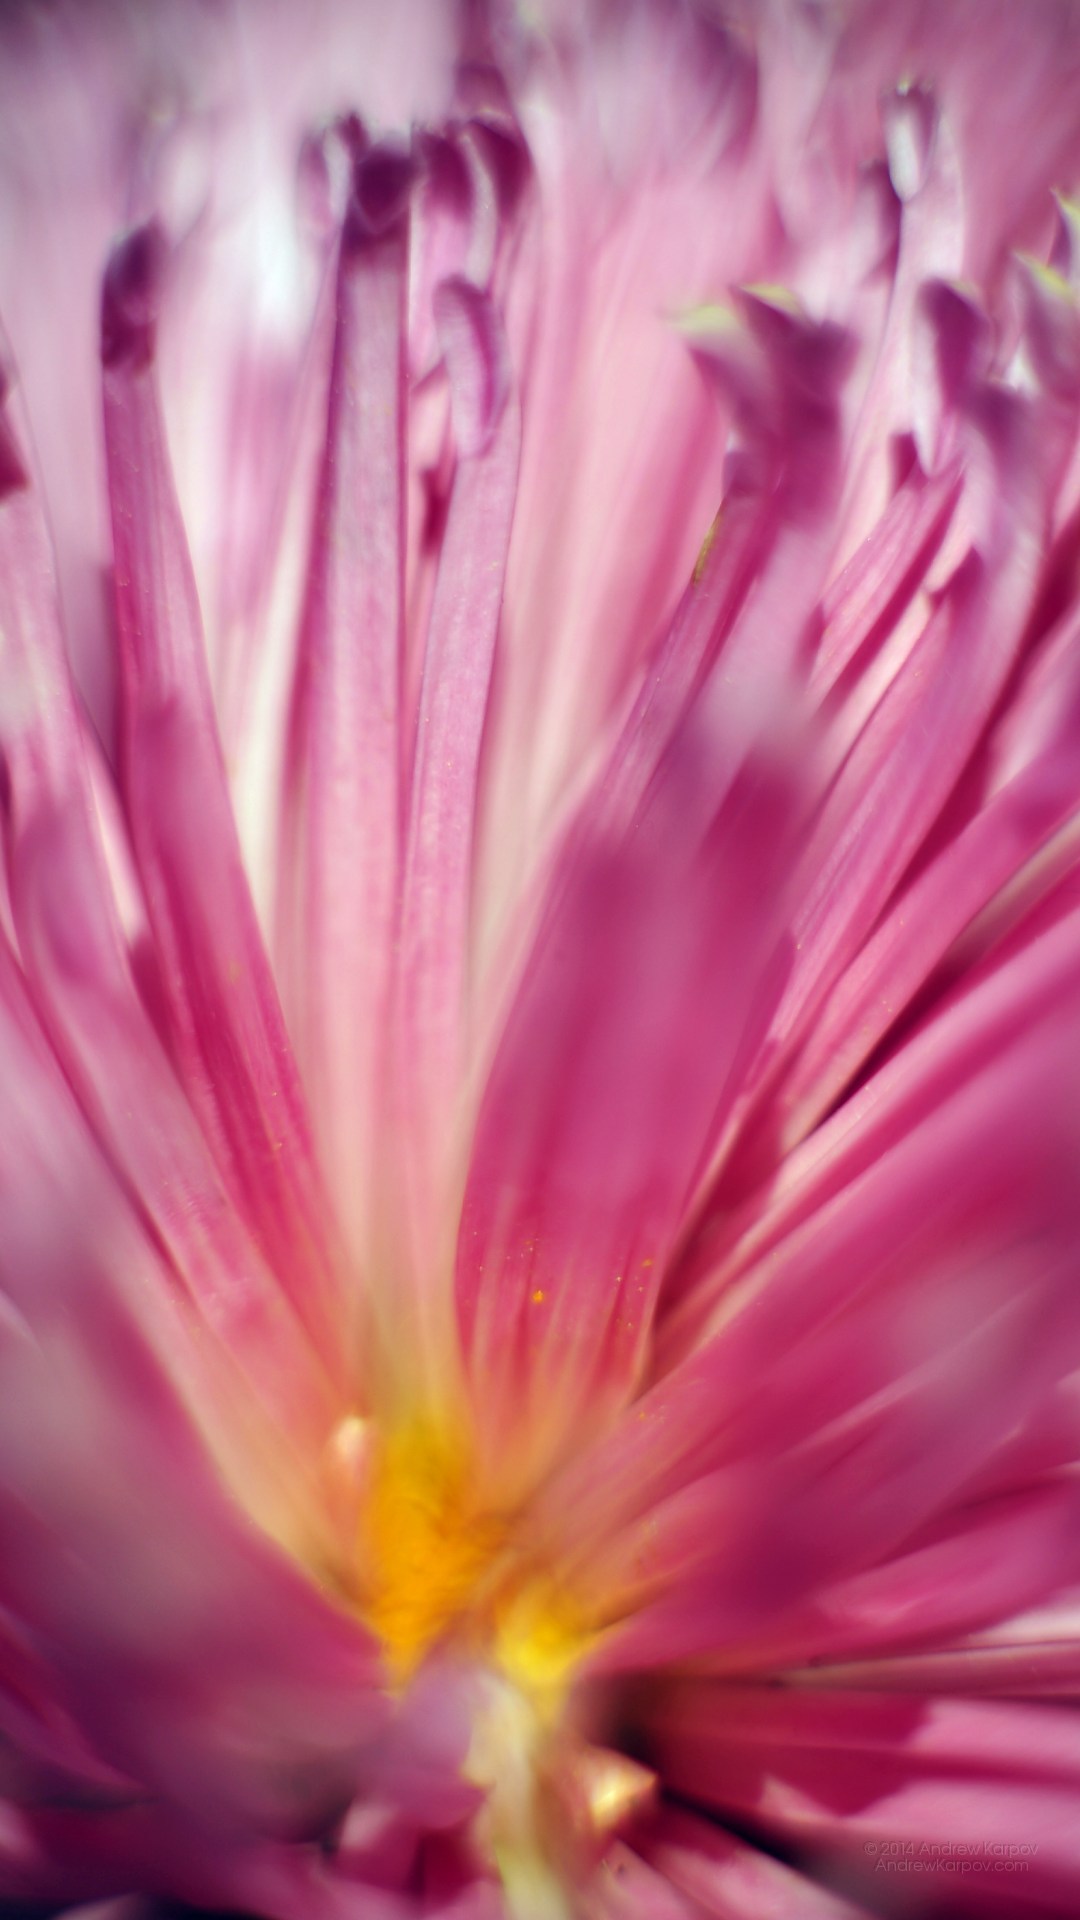 Lenovo K6 Power Background - Slike Cvijeća Za Pozadinu - 1080x1920 ...